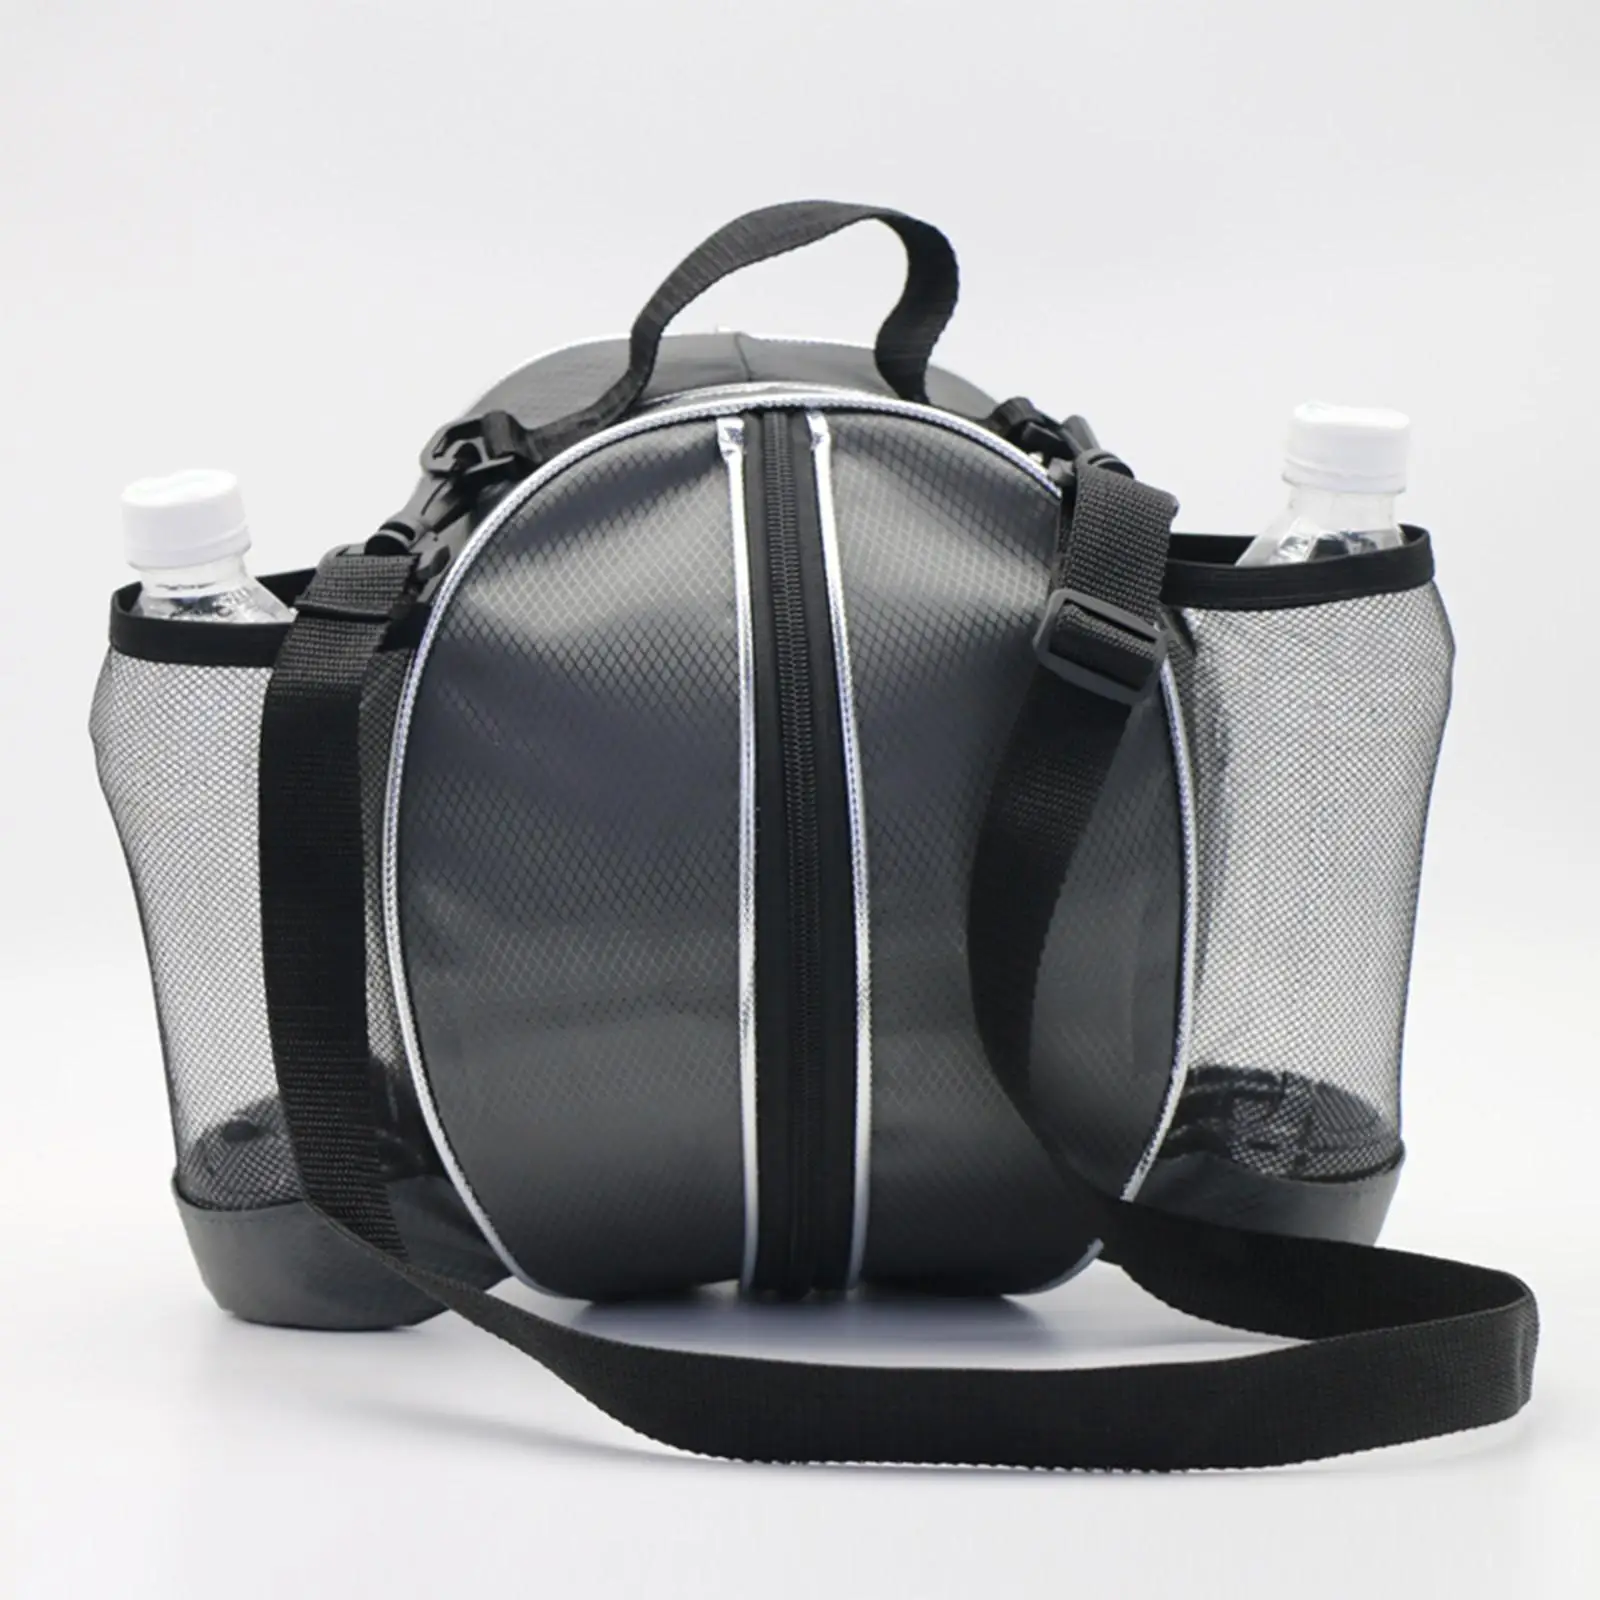 Basketball Bag Training Storage with Adjustable Shoulder Strap Mesh Pockets